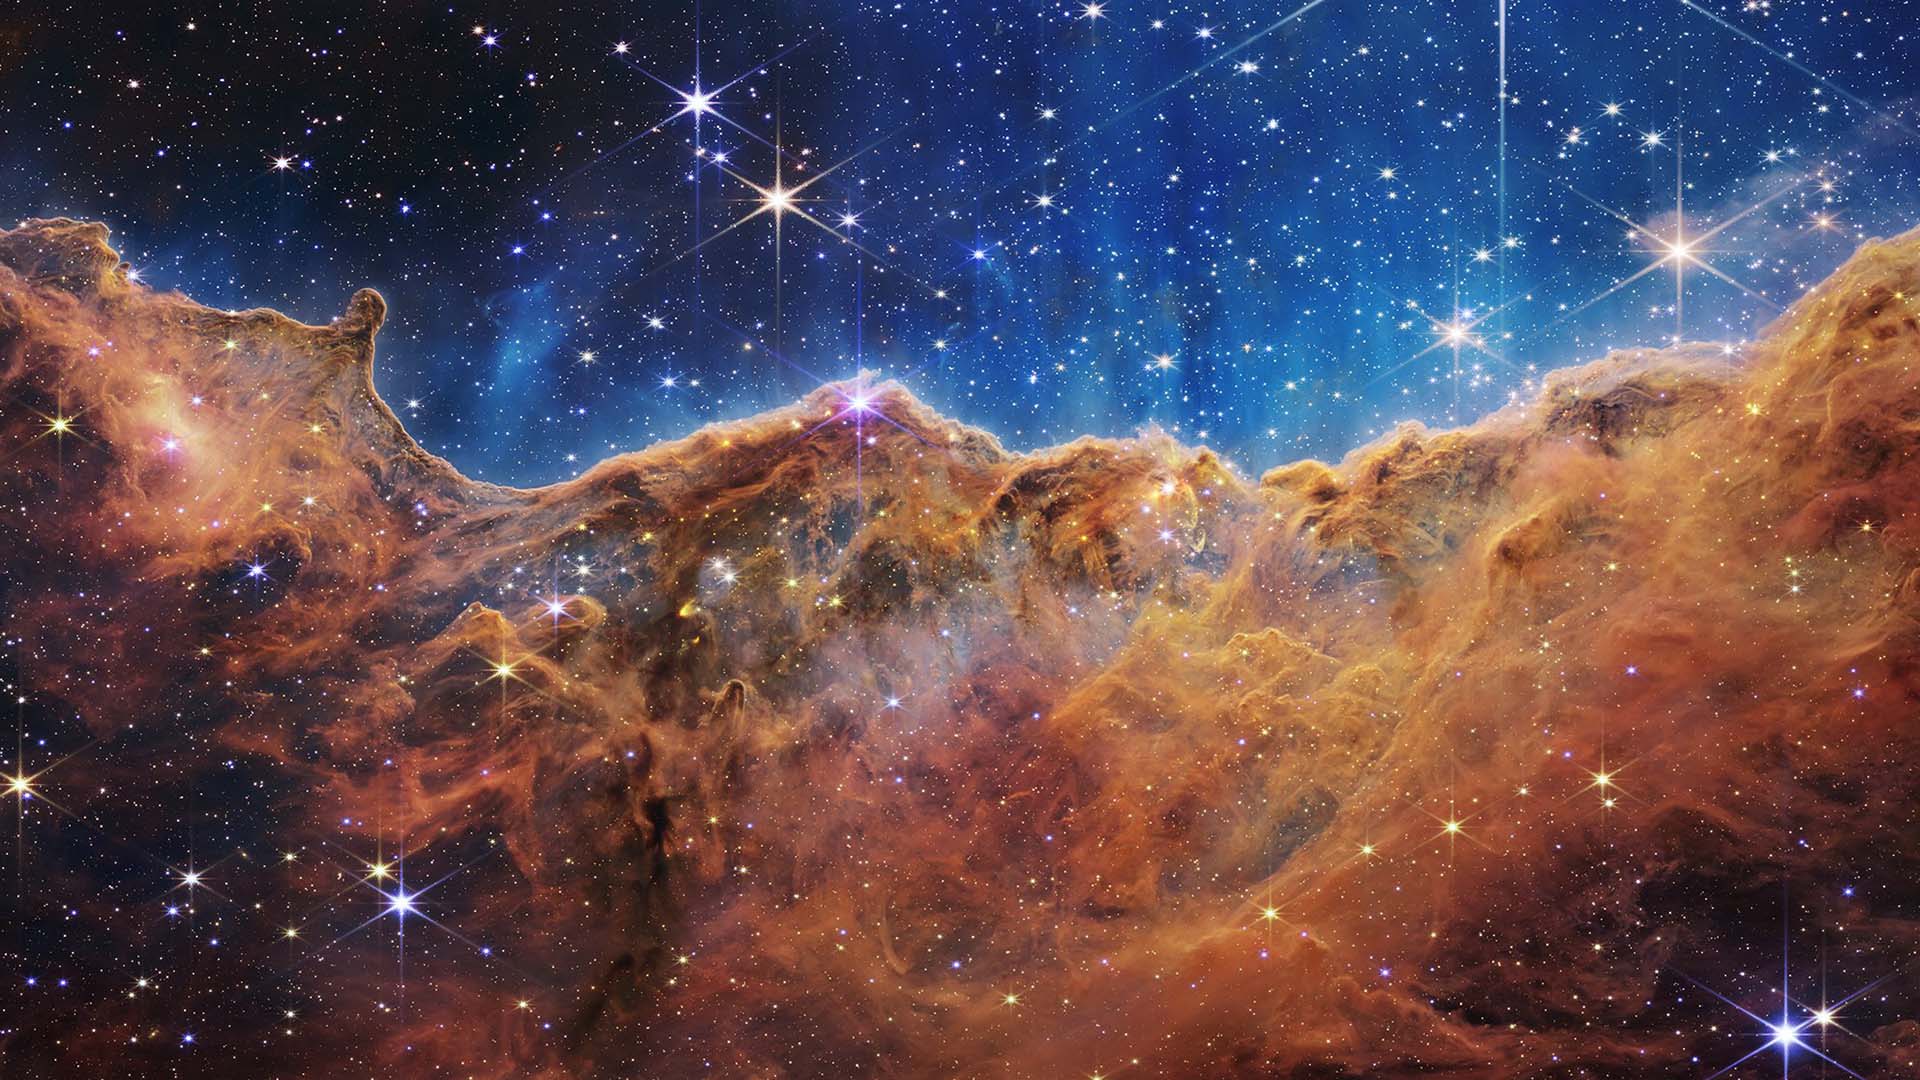 Carina Nebula: James Webb Telescope Images